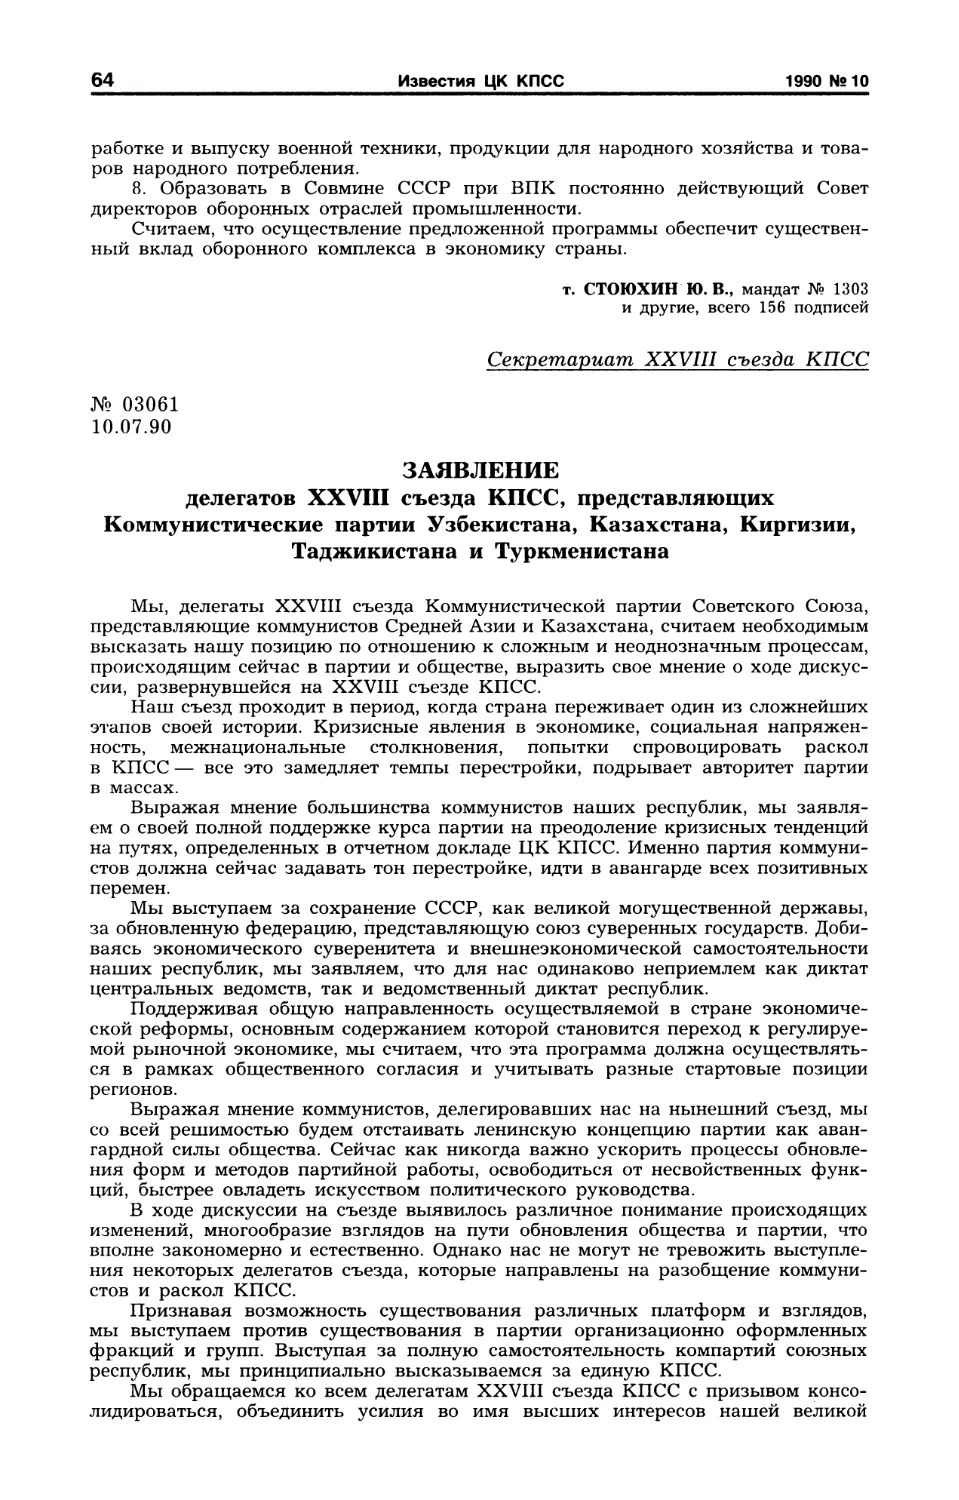 Заявление делегатов XXVIII съезда КПСС, представляющих Коммунистические партии Узбекистана, Казахстана, Киргизии, Таджикистана и Туркменистана